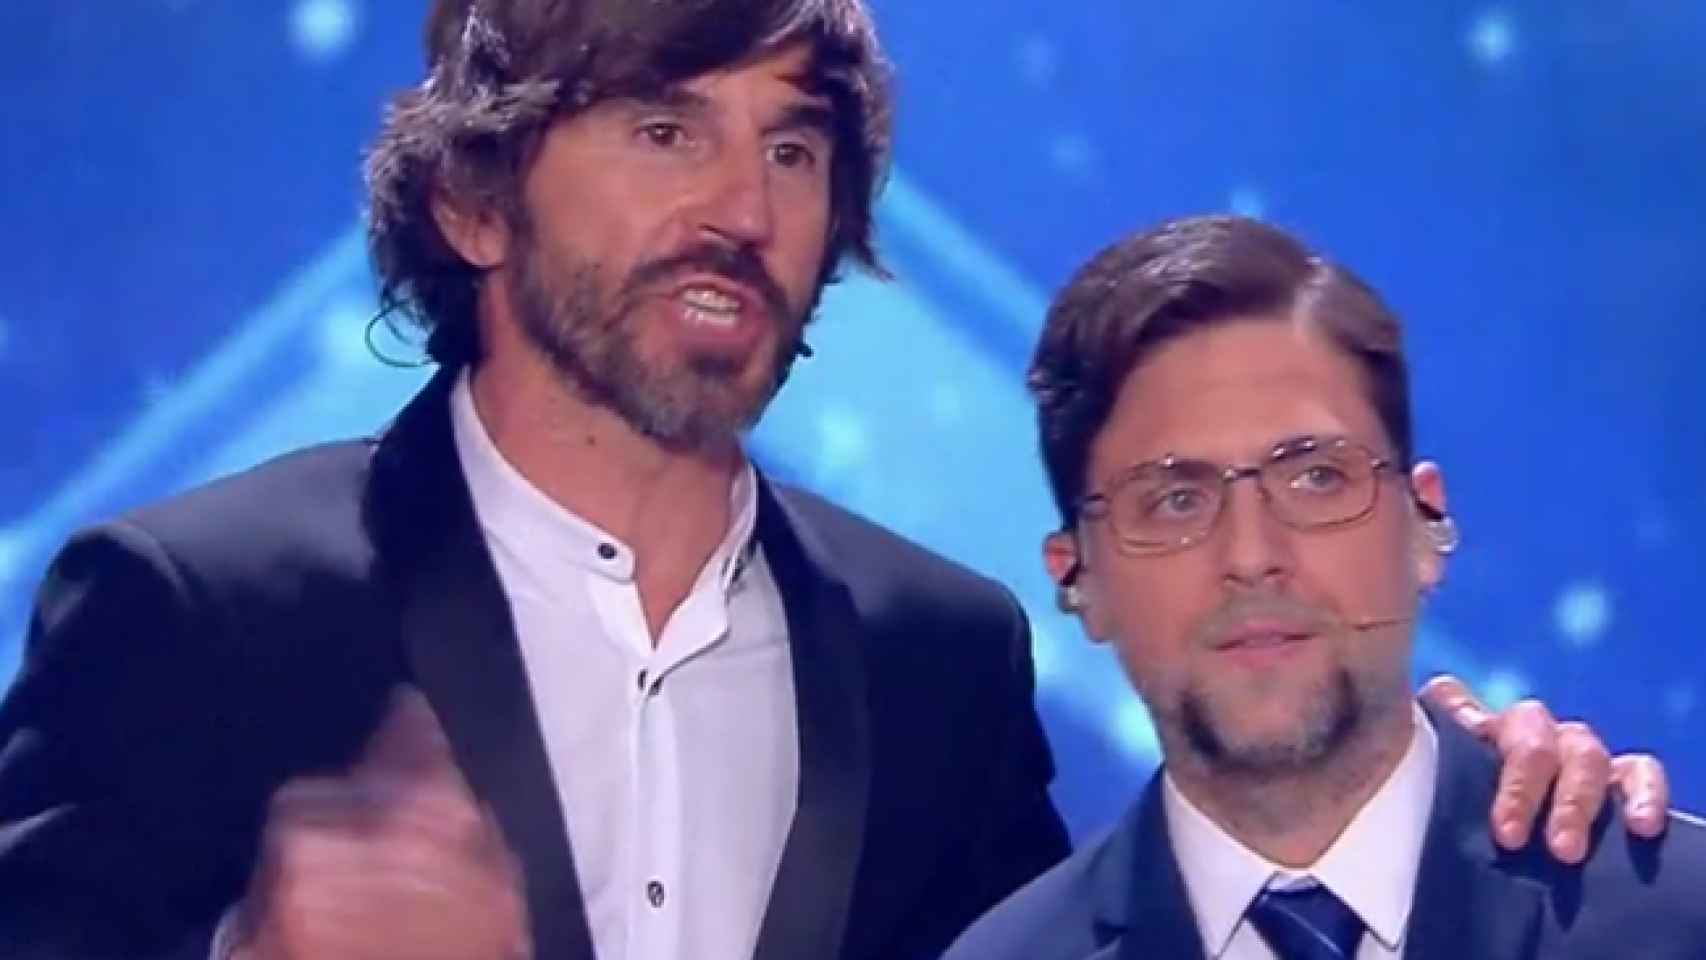 La pulla de Santi Millán a Mariano Rajoy en la final de 'Got Talent 2'